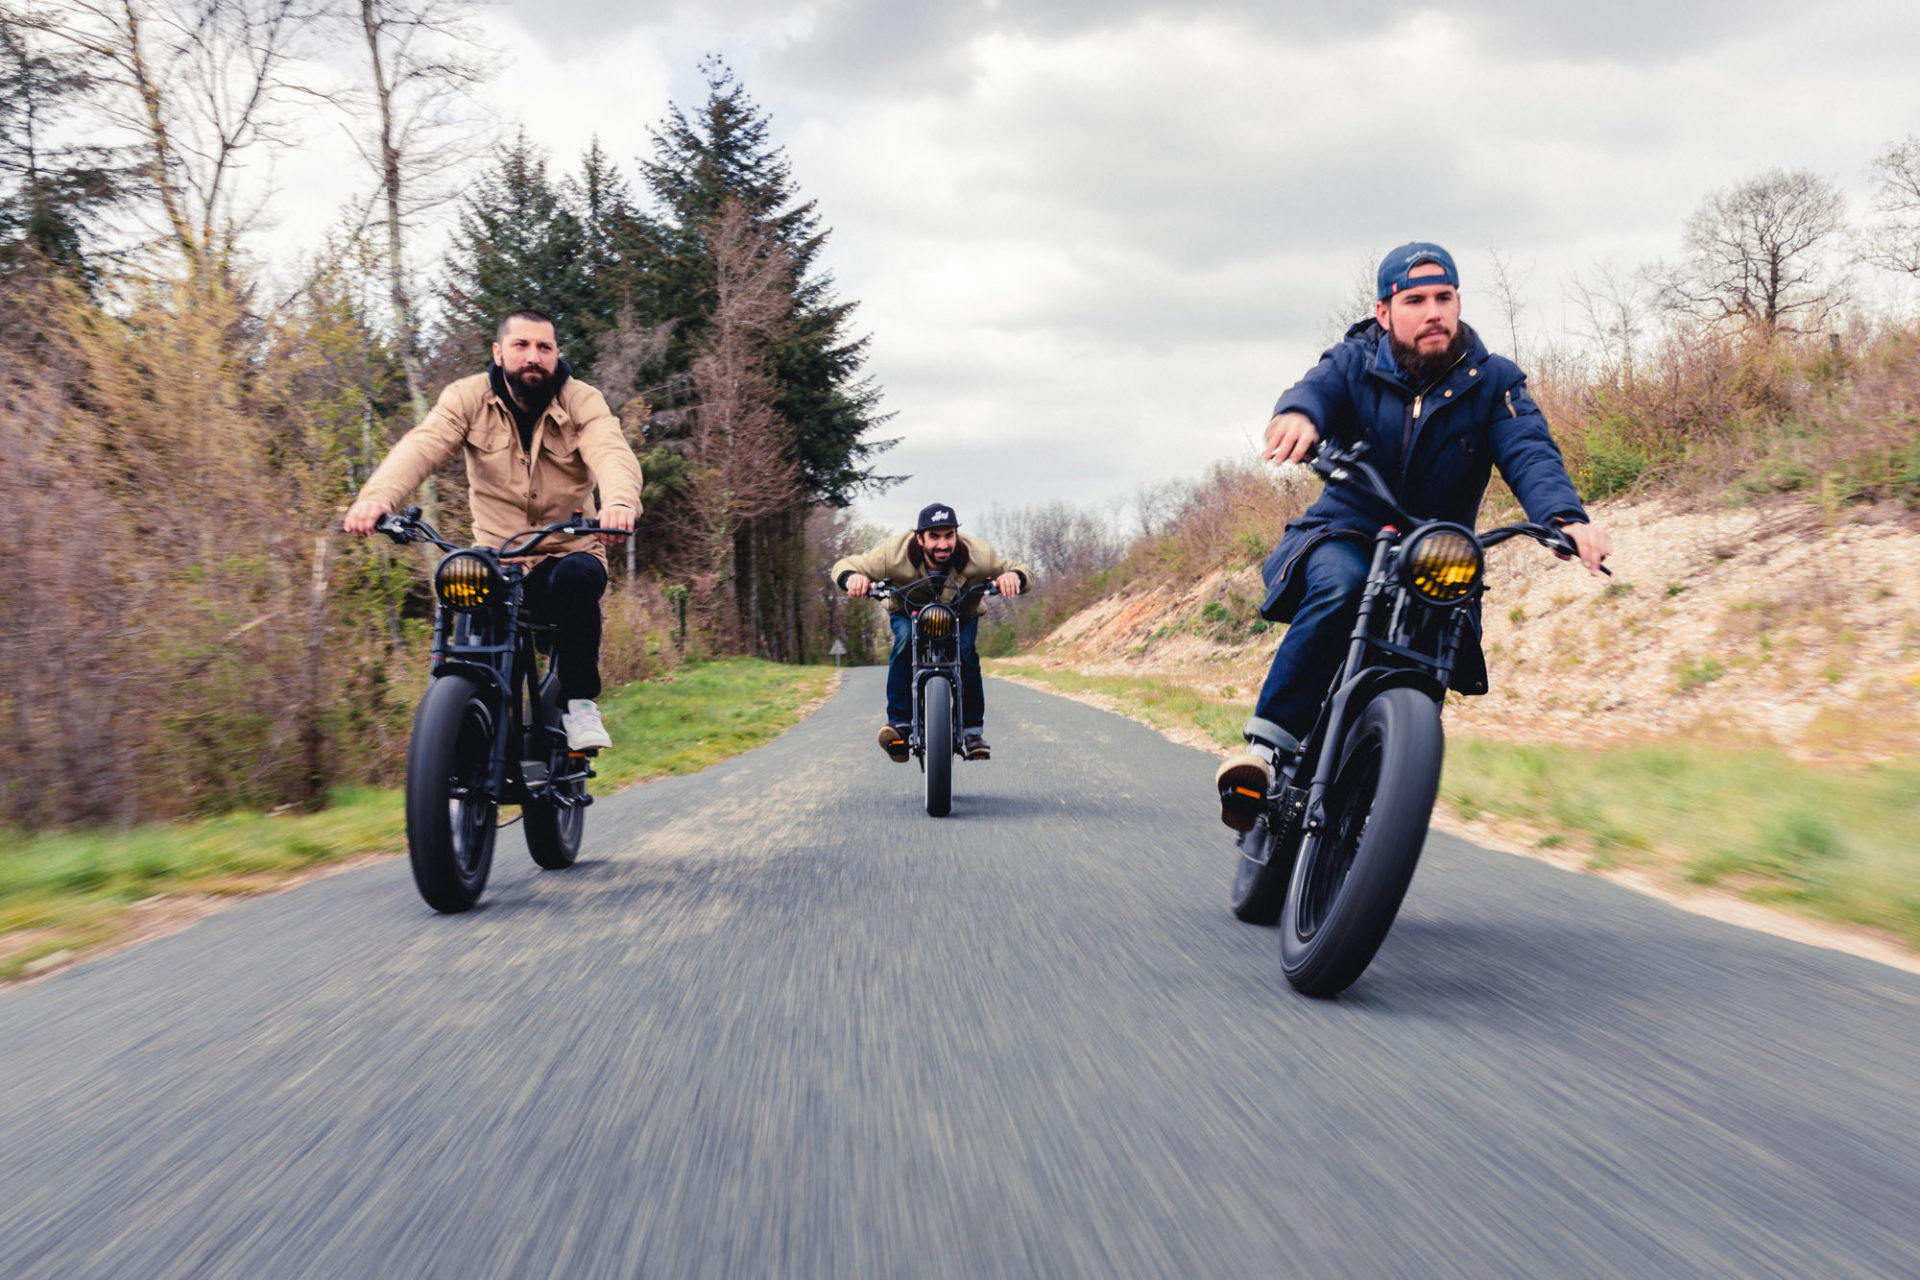 photo de trois personnes sur des vélos électrique noirs ressemblants à des vieilles motos, roulant face à la caméra sur la route